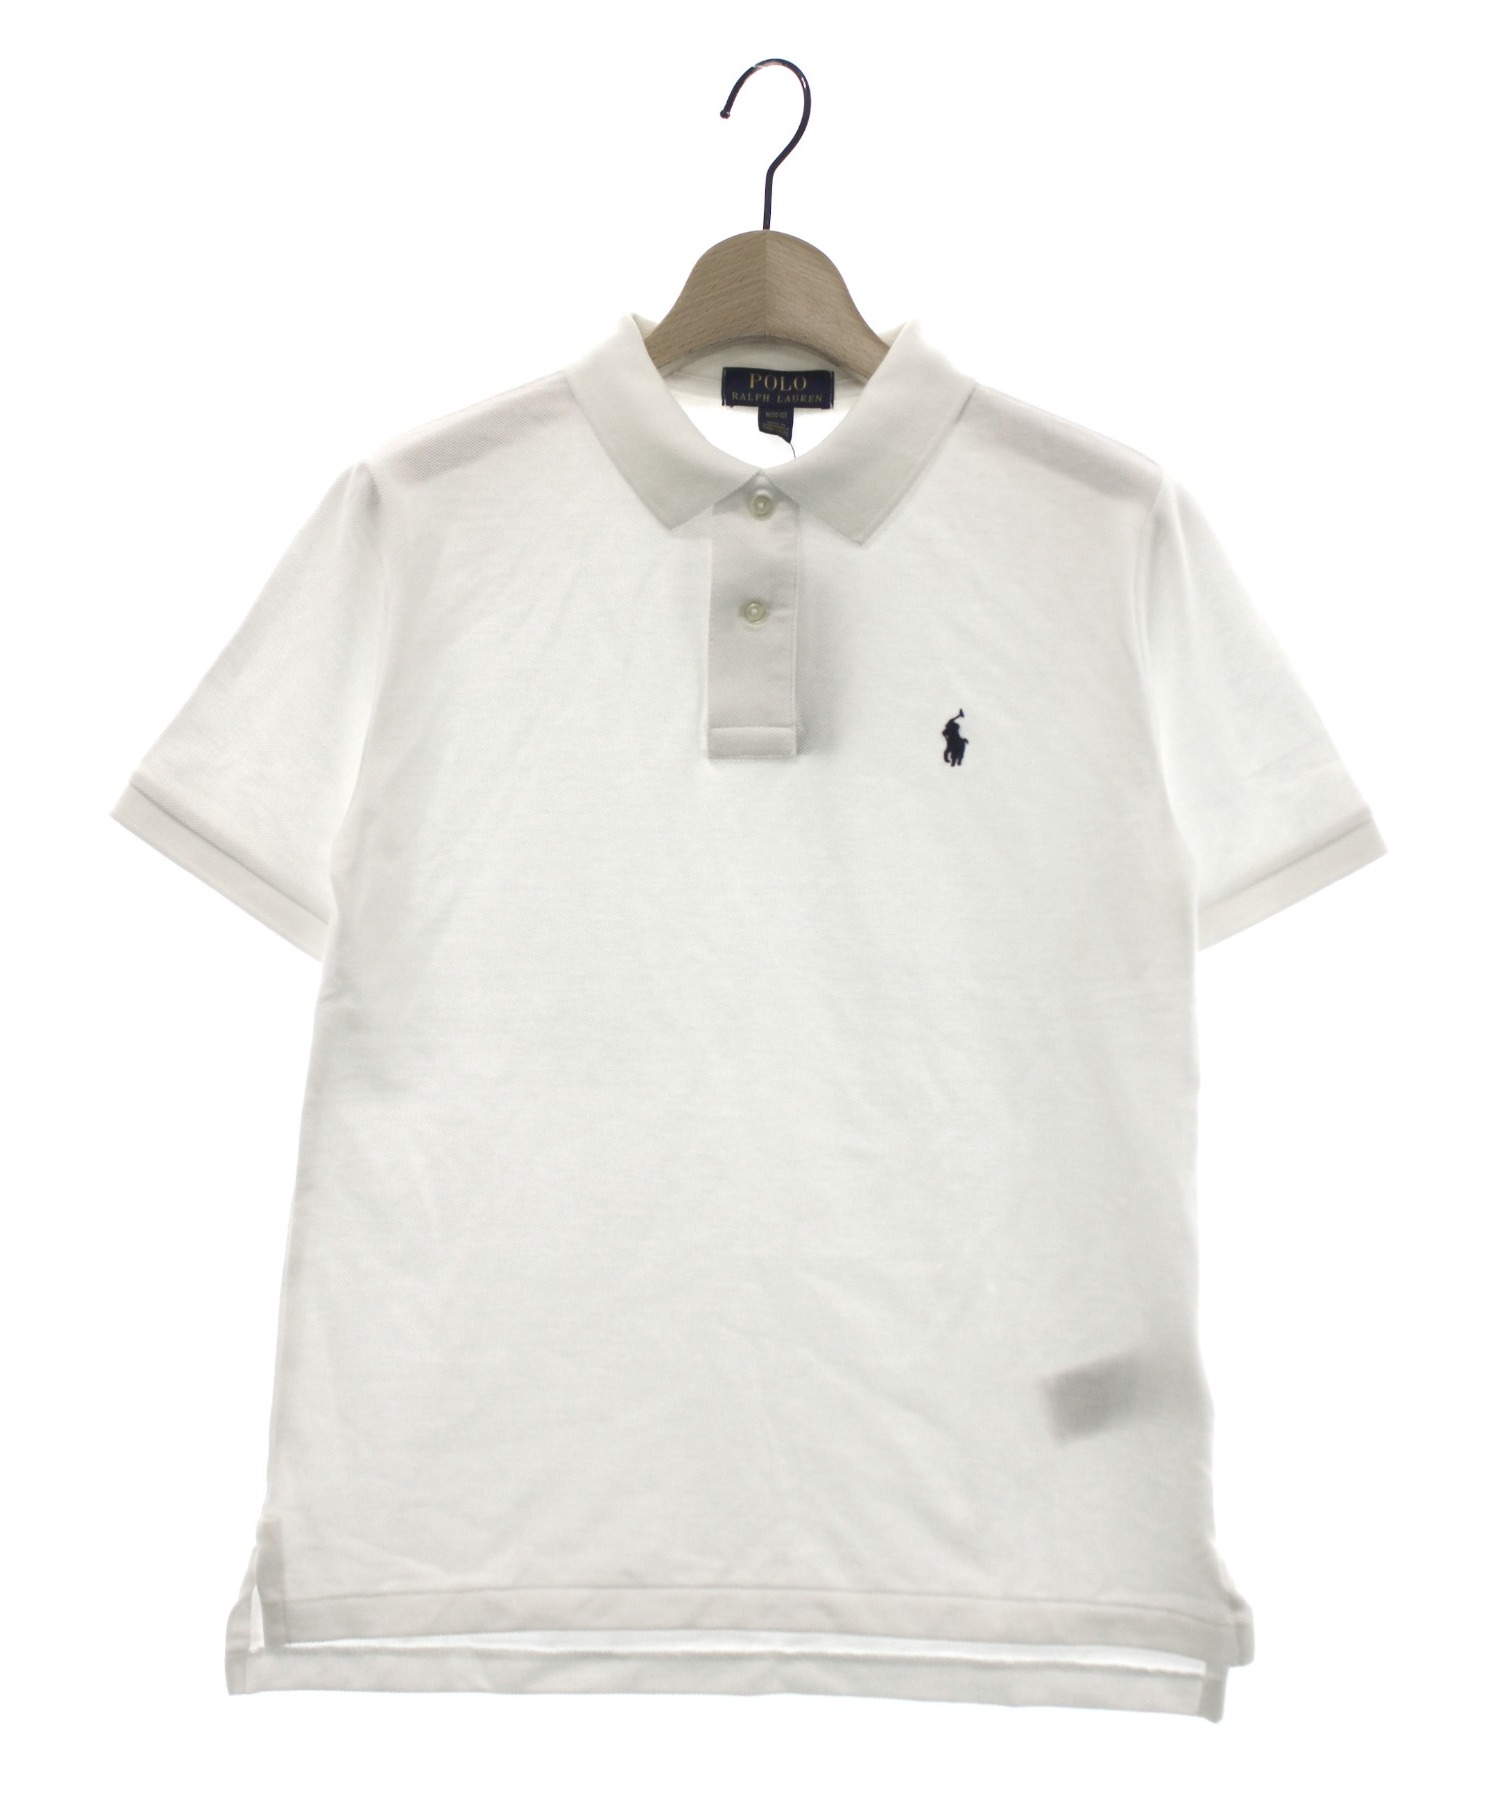 POLO RALPH LAUREN (ポロラルフローレン) ポロシャツ ホワイト サイズ:M(10-12) 150 未使用品